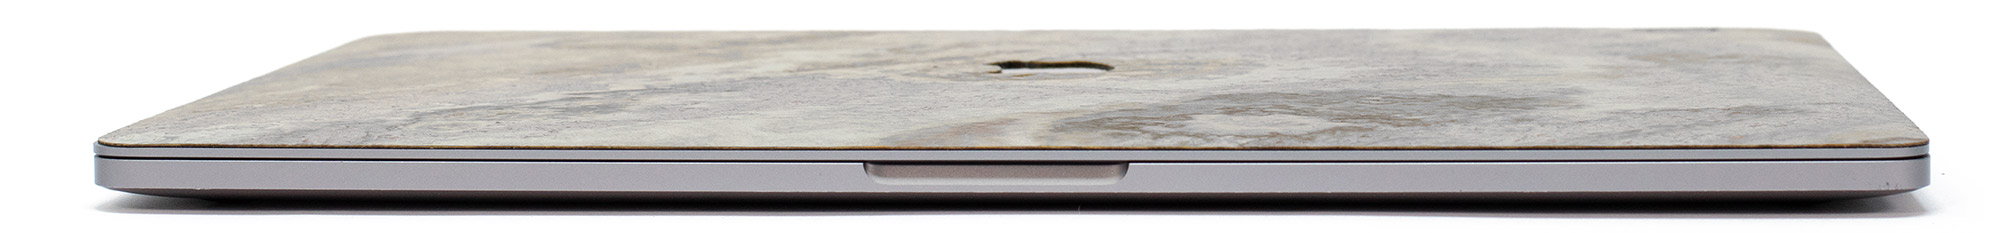 Cover macbook Macbook Pro Silver grey